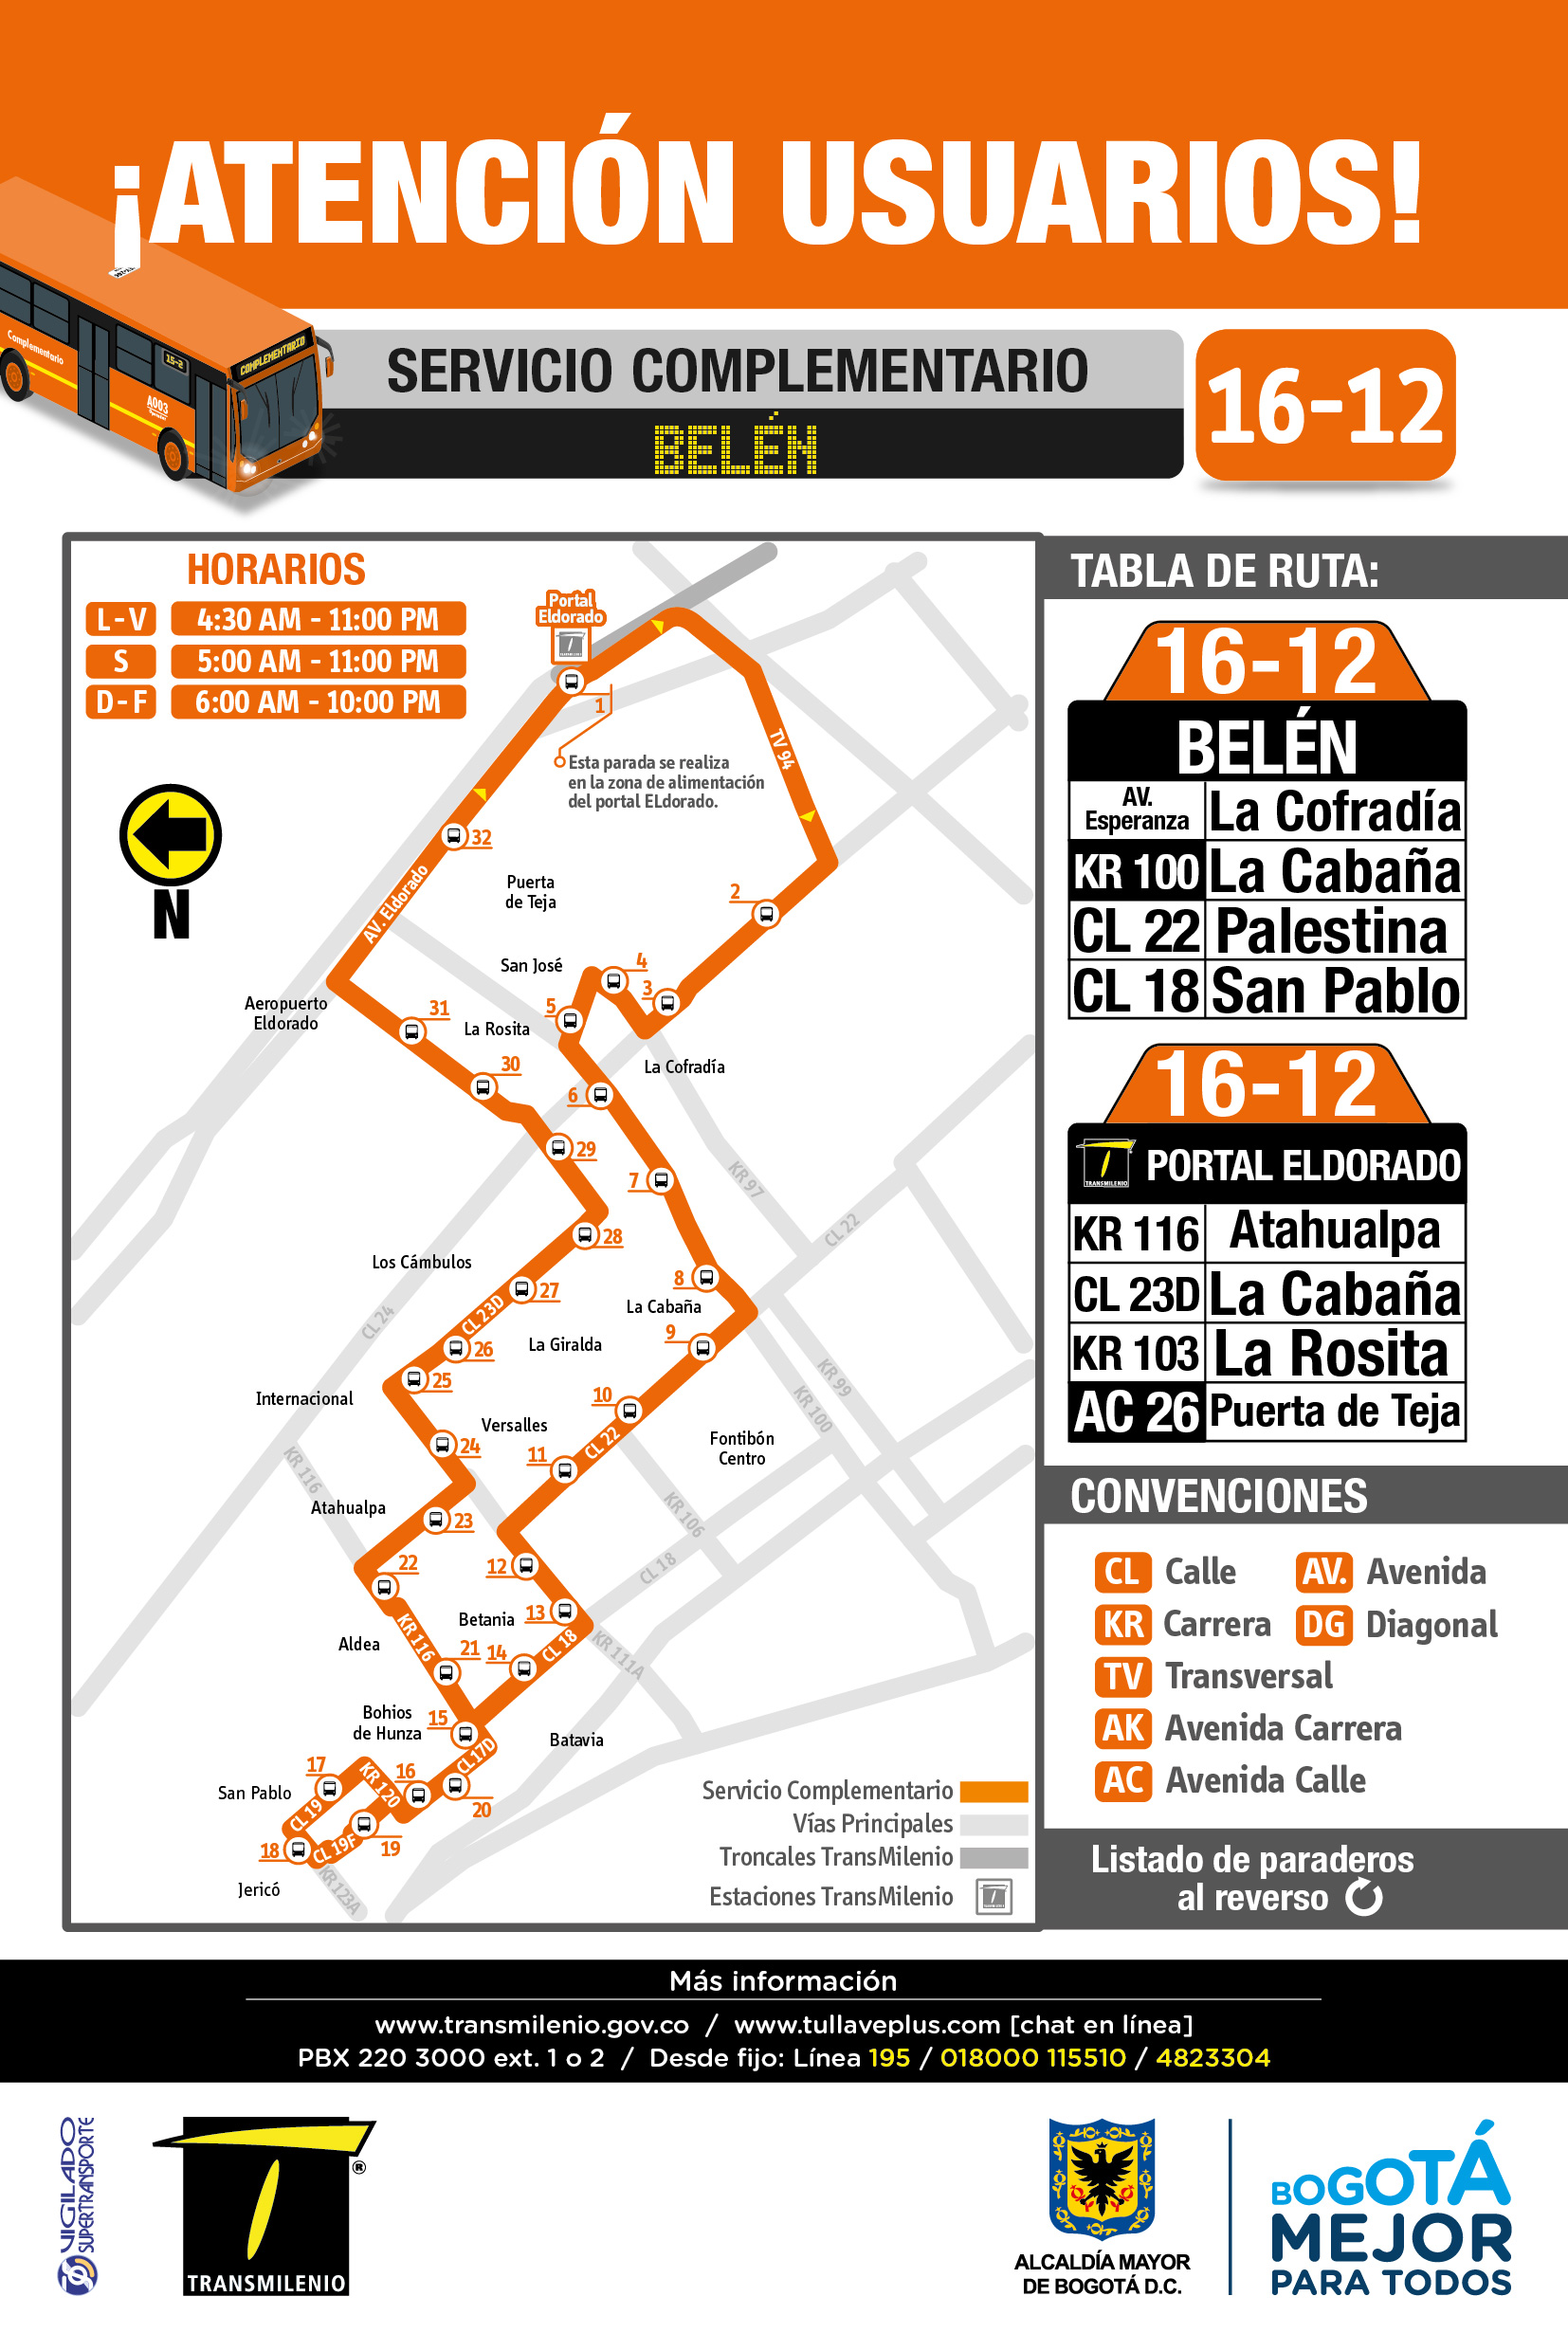 La ruta complementaria  belén 16-12 tiene nueva parada en  zona de alimentadores del portal Eldorado, y  extendió su recorrido en el sector  San Pablo y Jericó